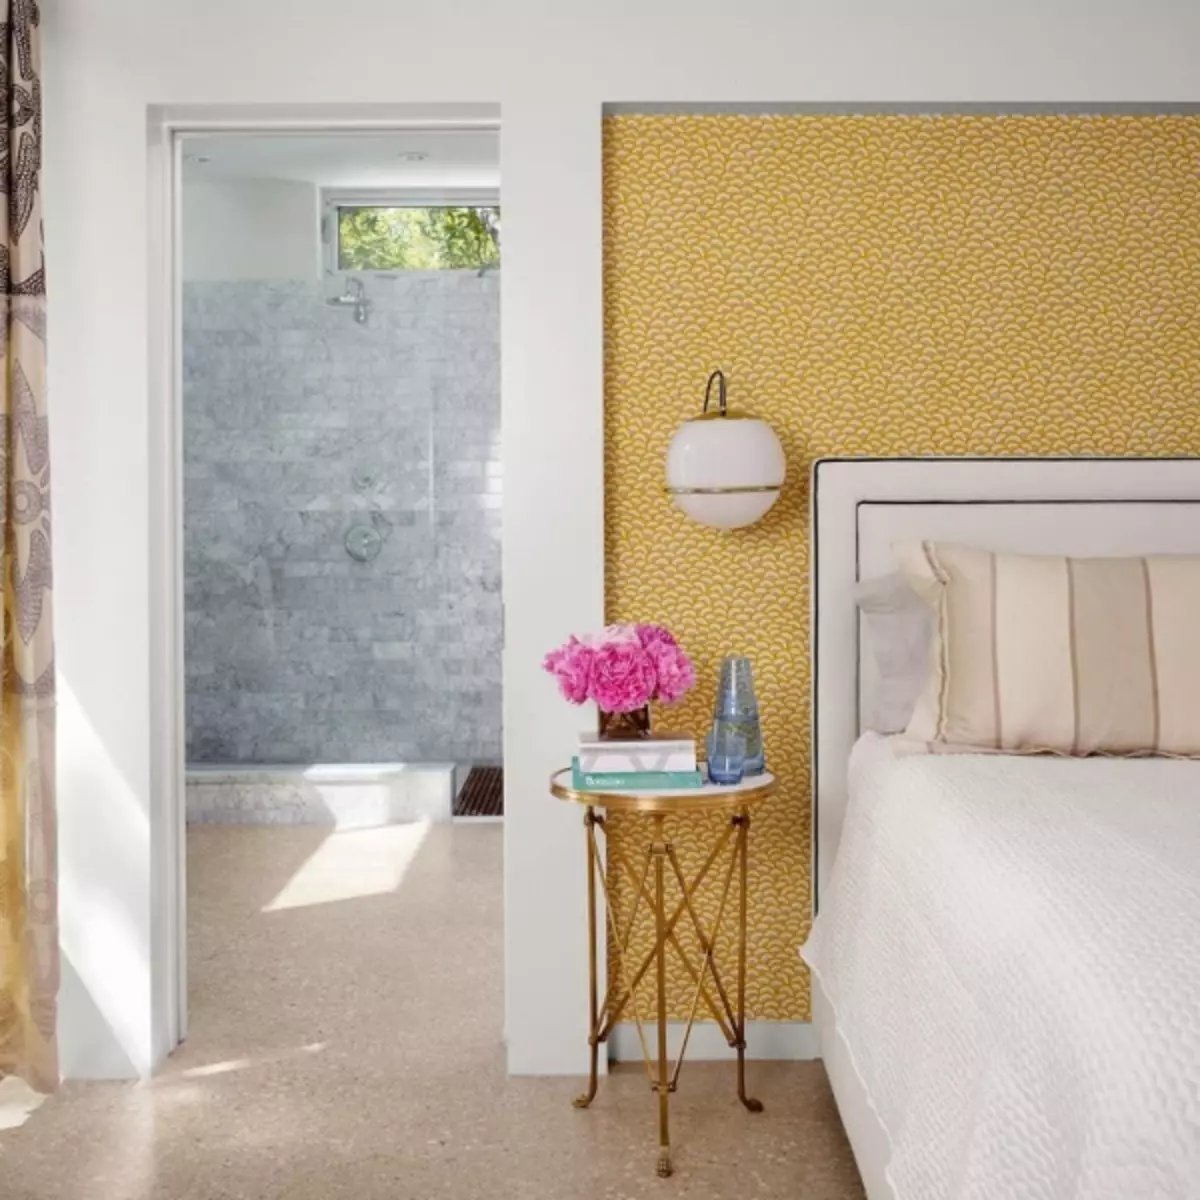 Wallpaper di kamar tidur foto desain 2019: gabungan, modis 2019, ide-ide modern, di kamar kecil, gaya di kamar tidur interior, koleksi baru, video